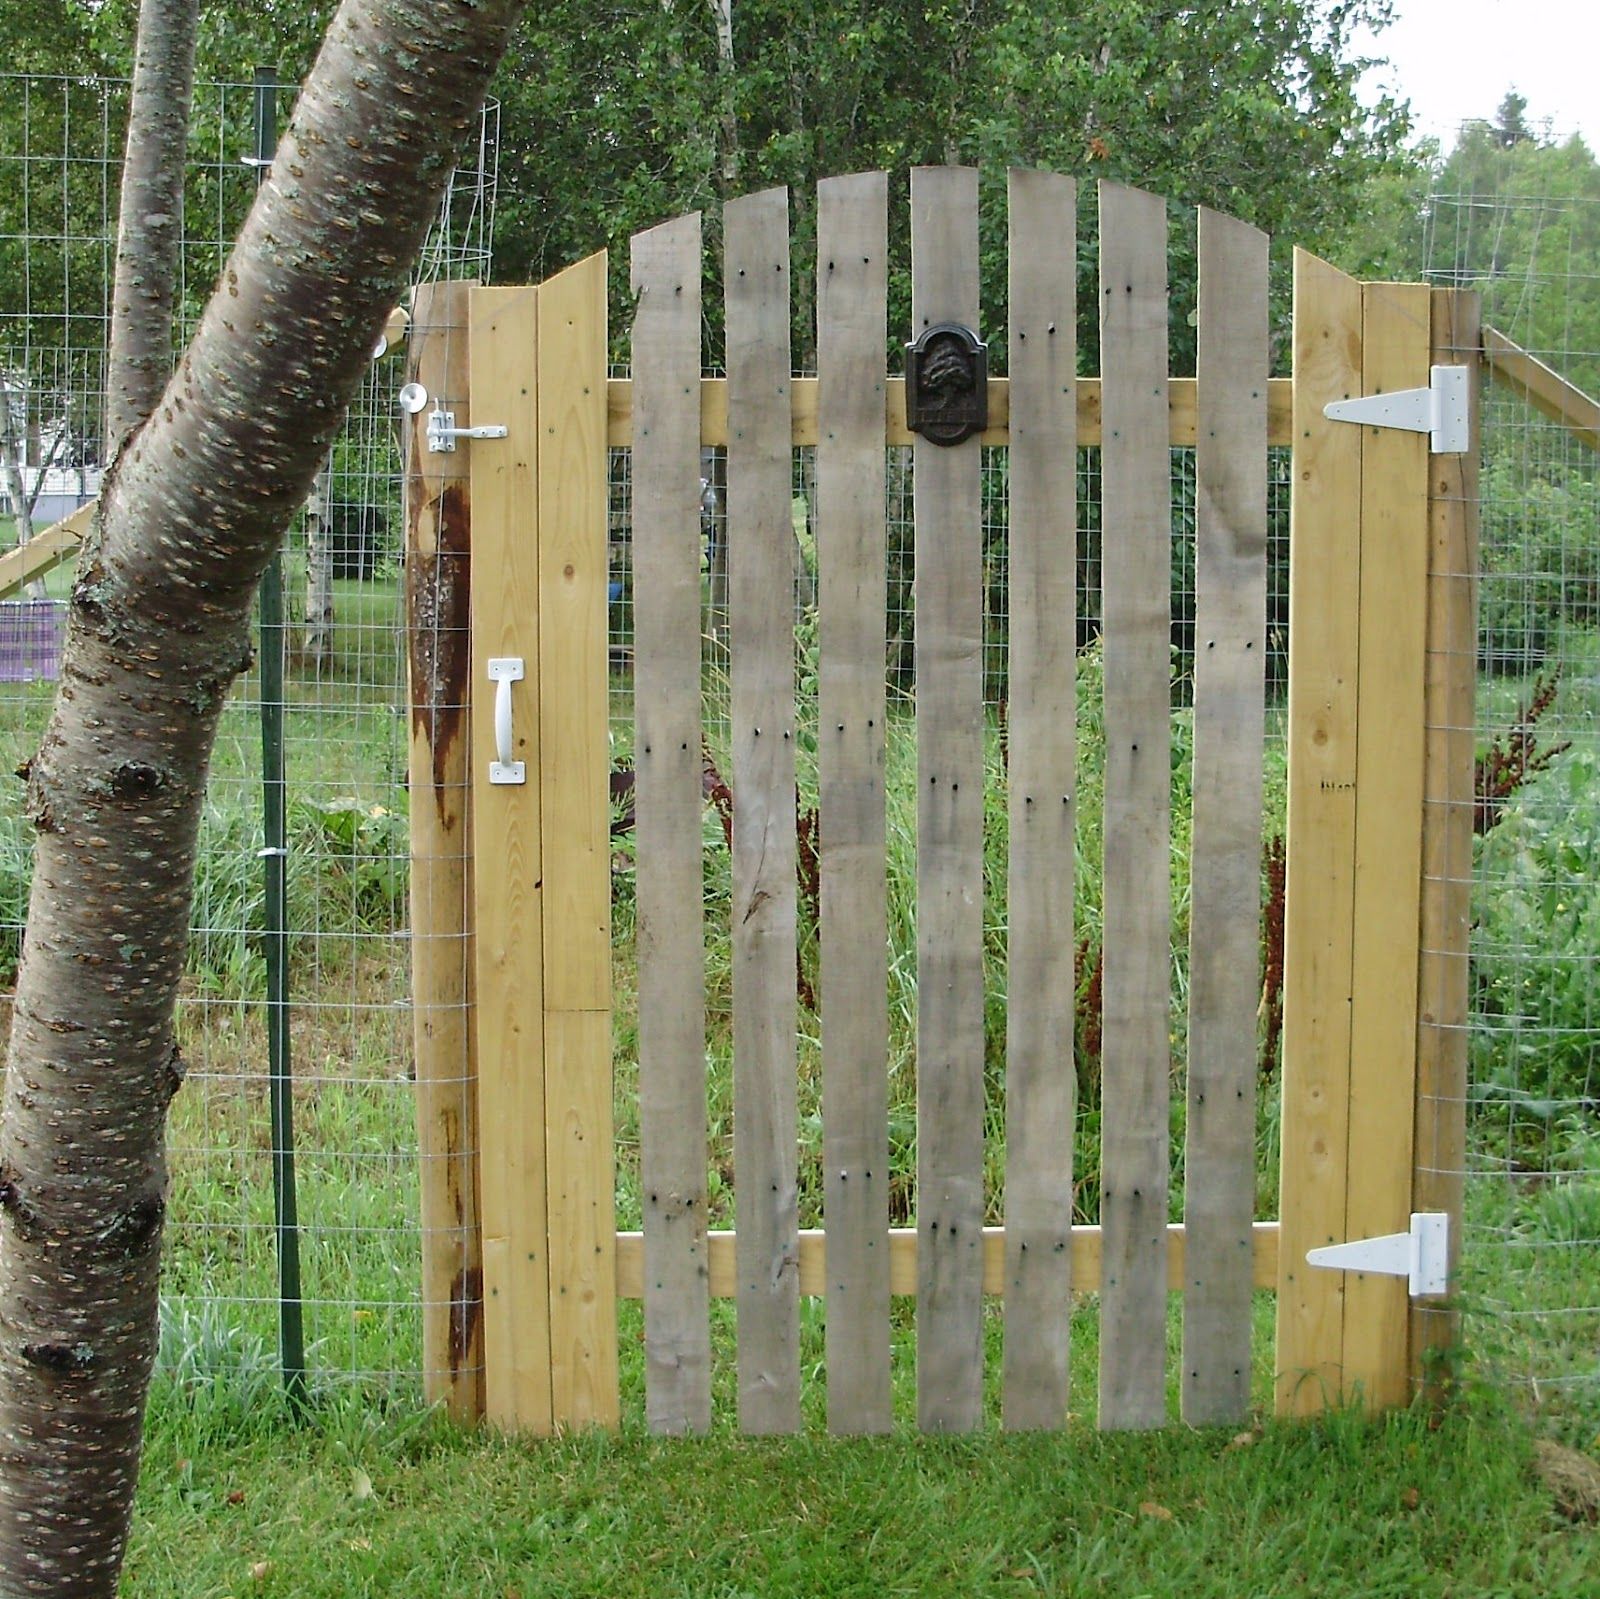 Wooden Pallet Gate Designs